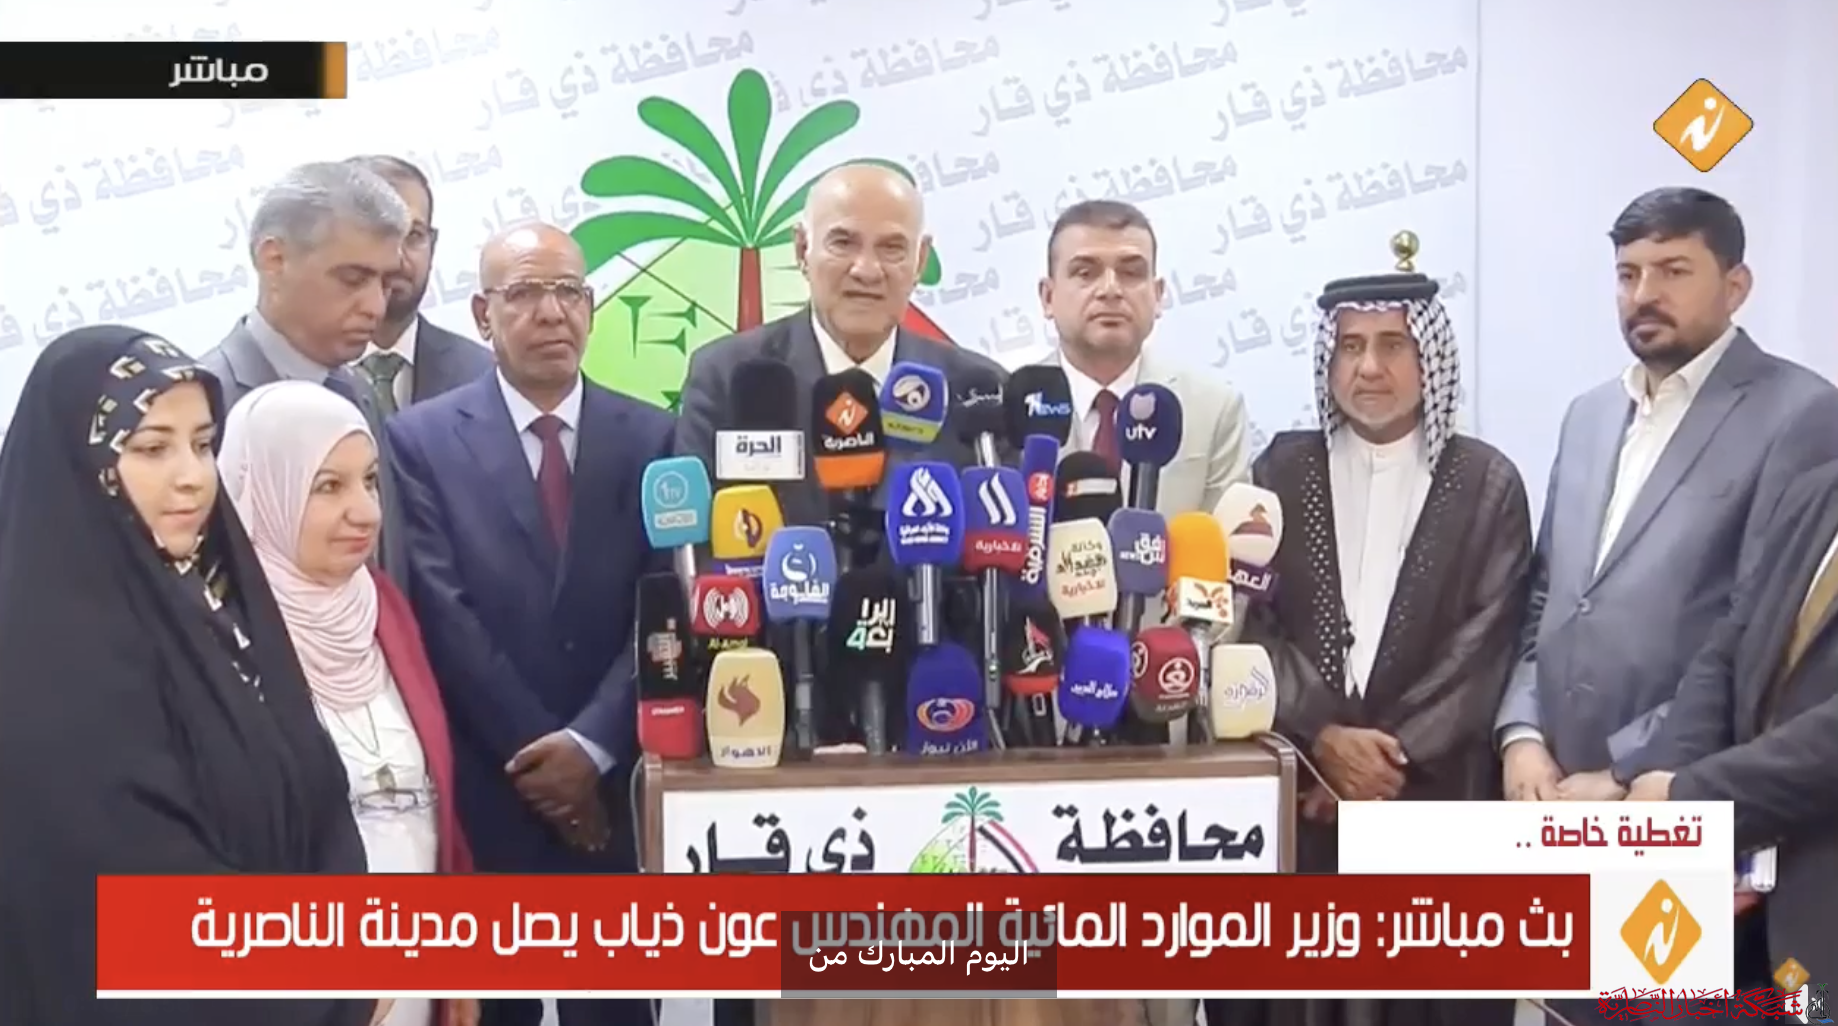 فيديو: تلفزيون الناصرية ينقل المؤتمر الصحفي لوزير الموارد المائية والحكومة المحلية في ذي قار